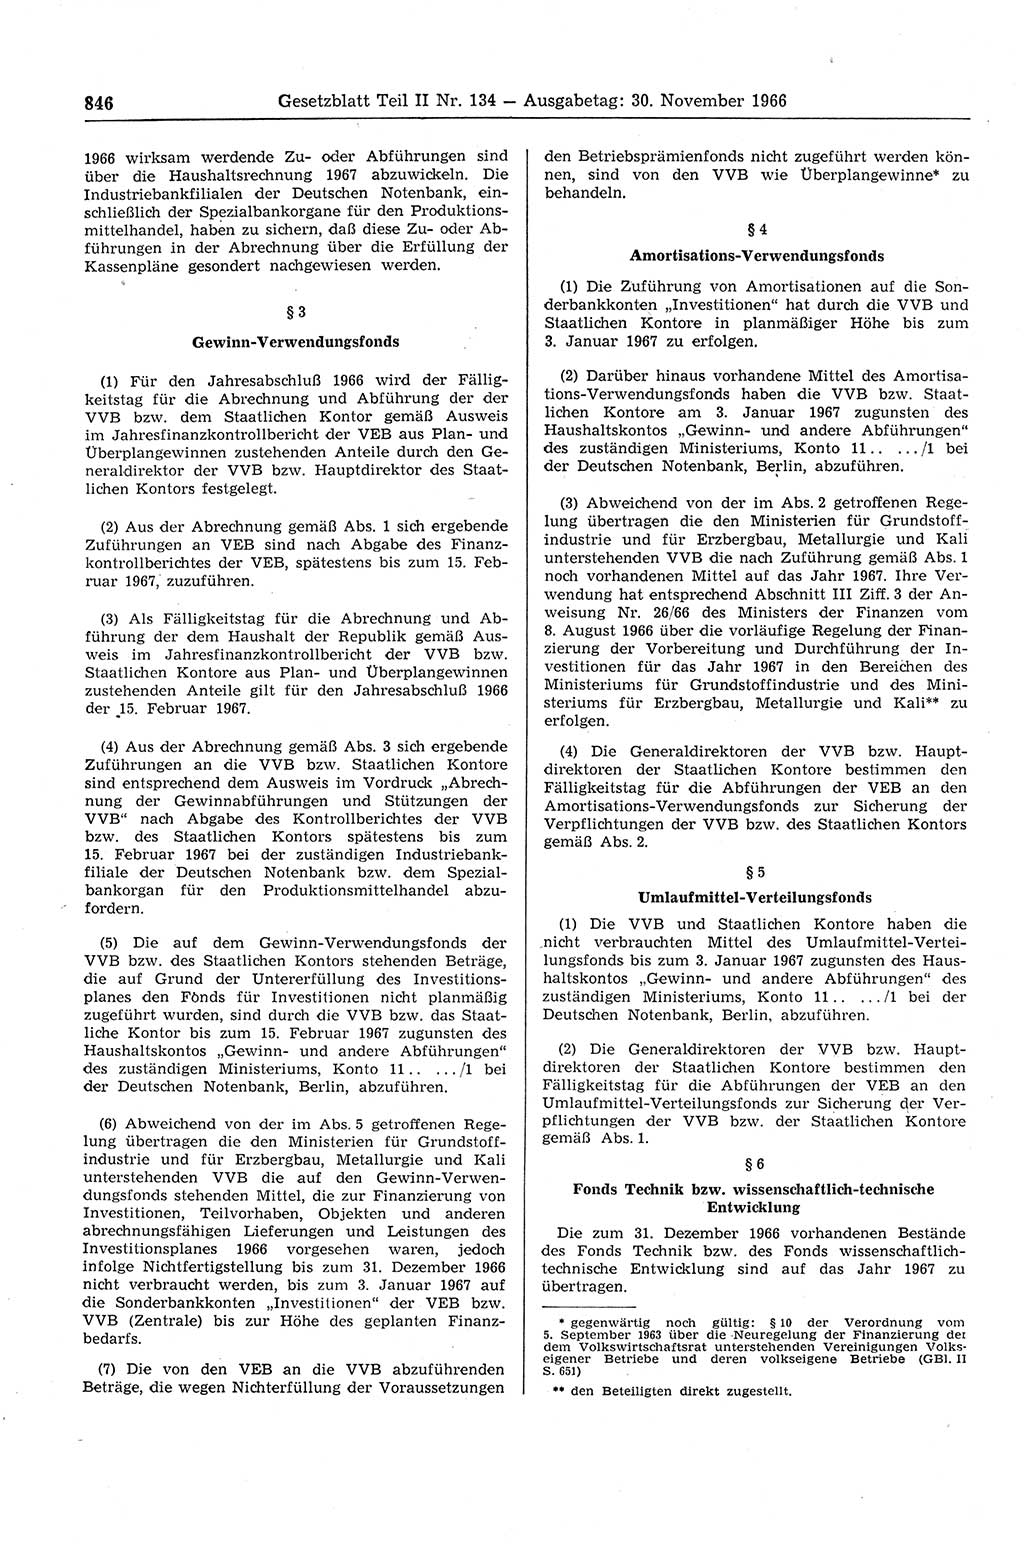 Gesetzblatt (GBl.) der Deutschen Demokratischen Republik (DDR) Teil ⅠⅠ 1966, Seite 846 (GBl. DDR ⅠⅠ 1966, S. 846)